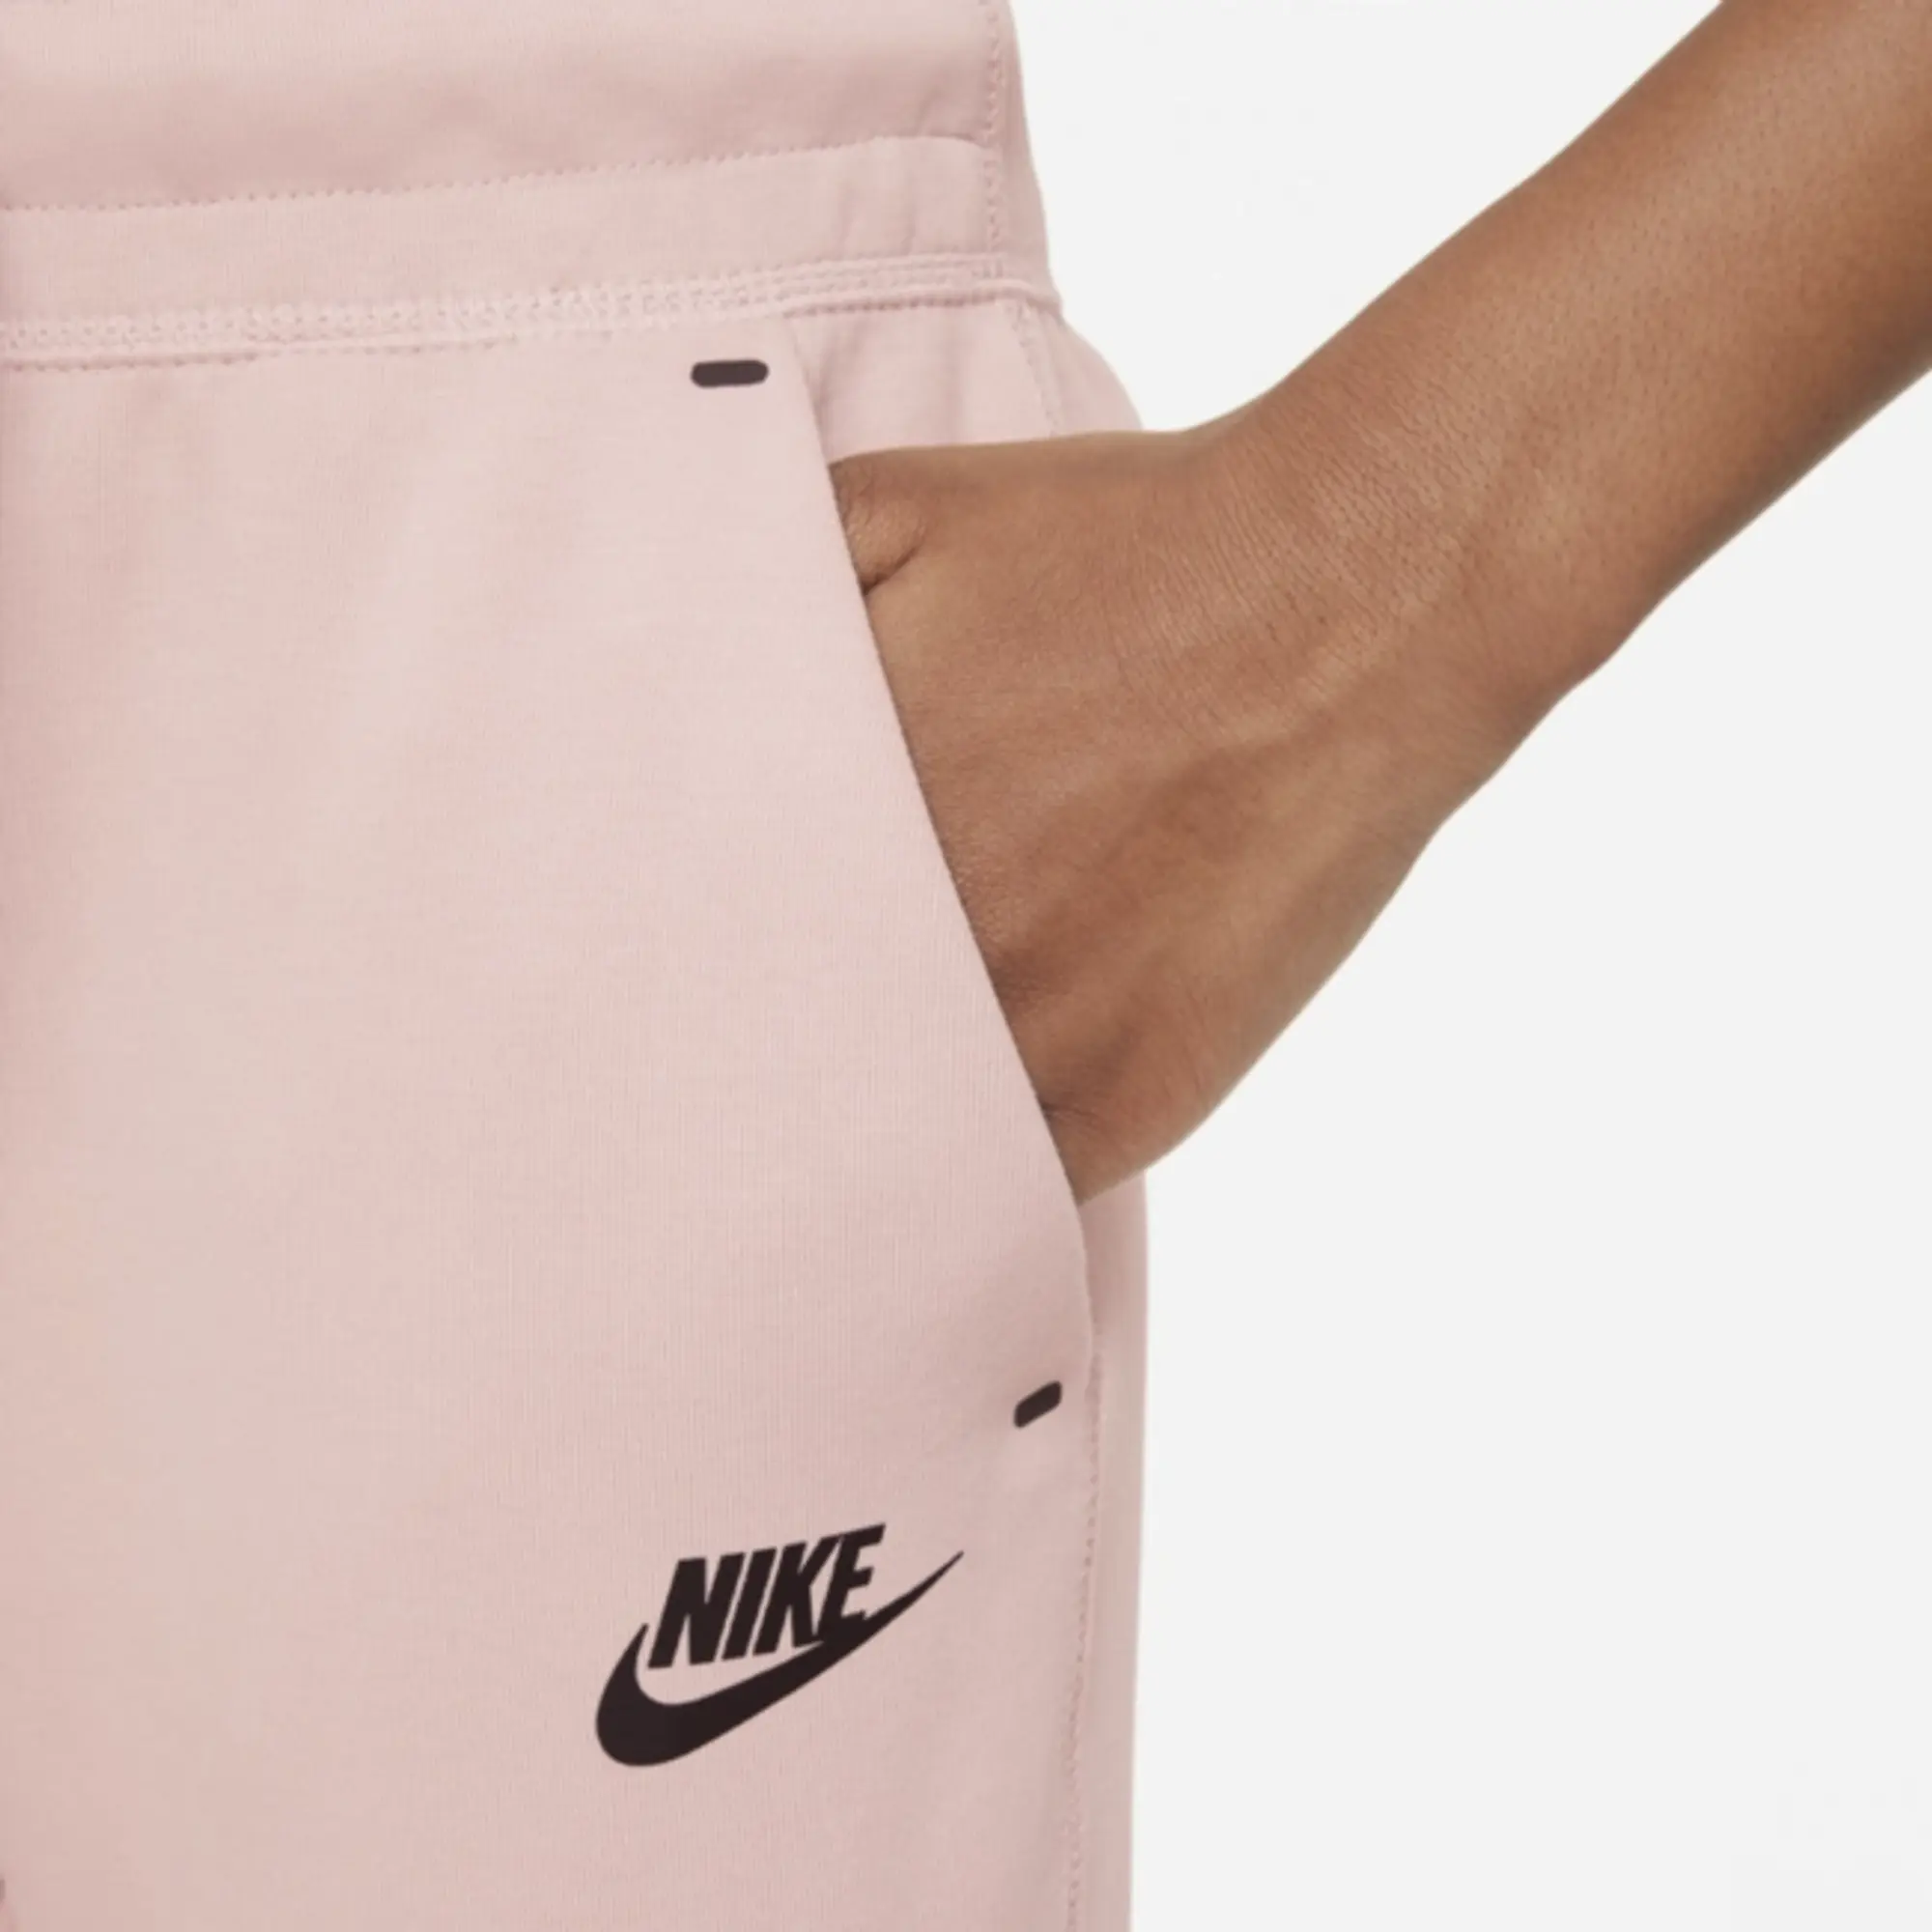 Nike Sportswear Older Kids Tech Fleece Pants 8 15Y